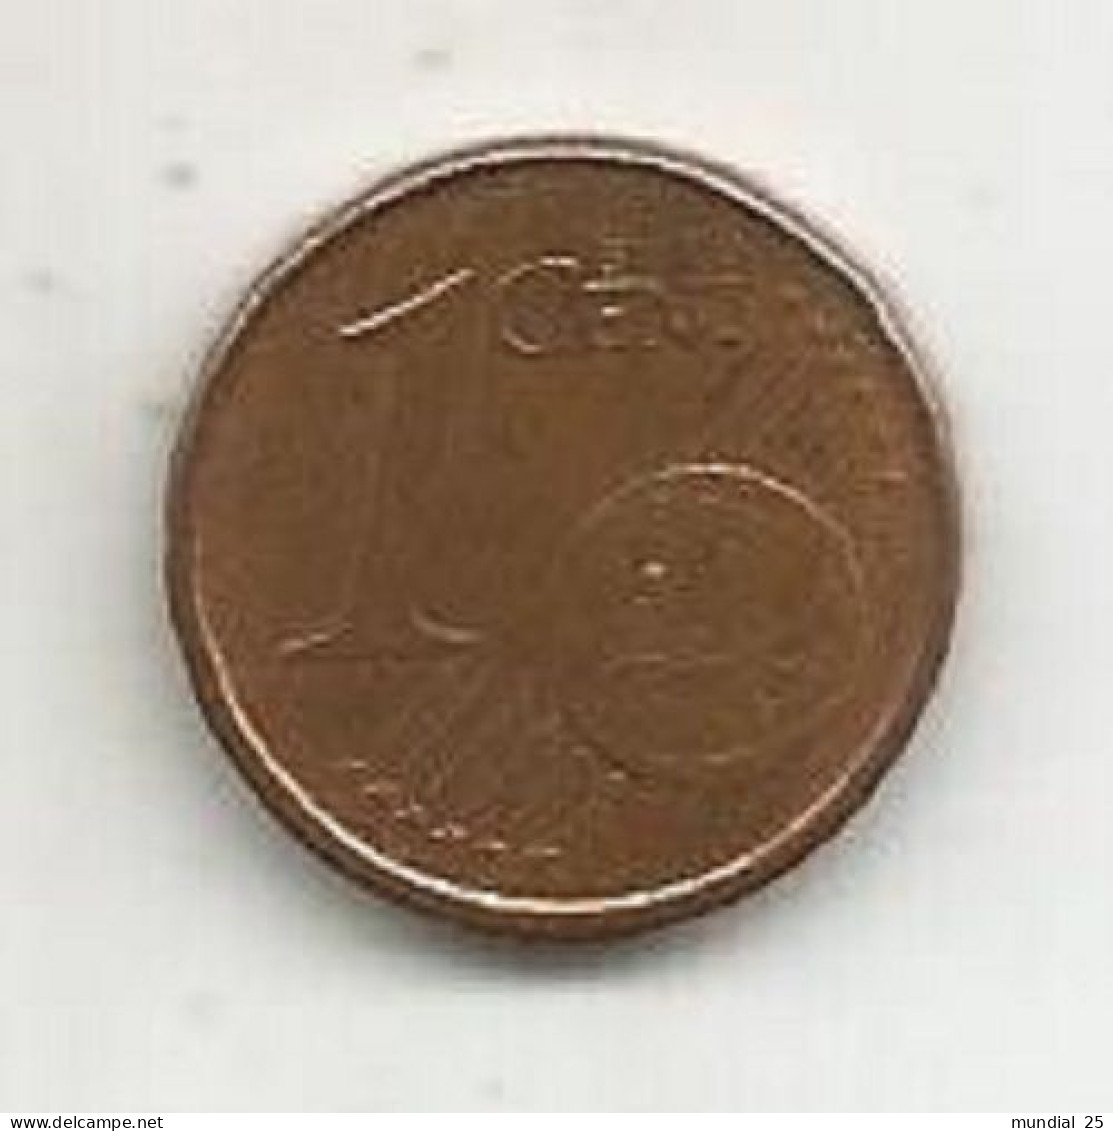 SPAIN 1 EURO CENT 2003 - Spanien